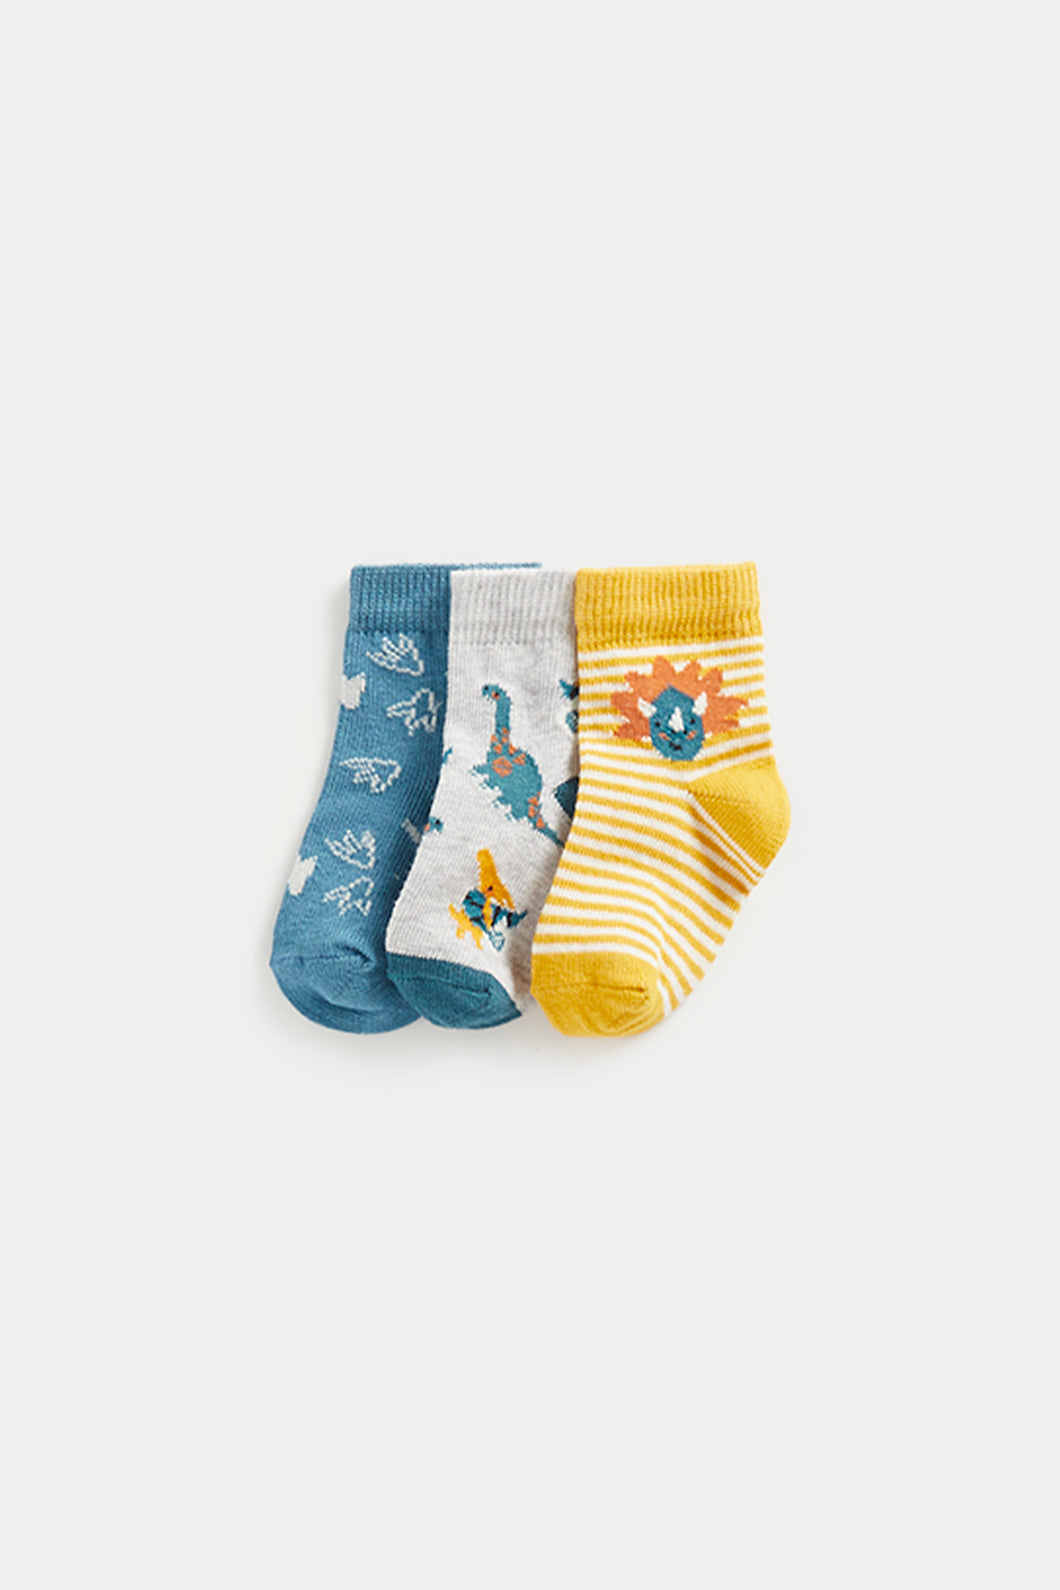 Mothercare Dinosaur Baby Socks - 3 Pack